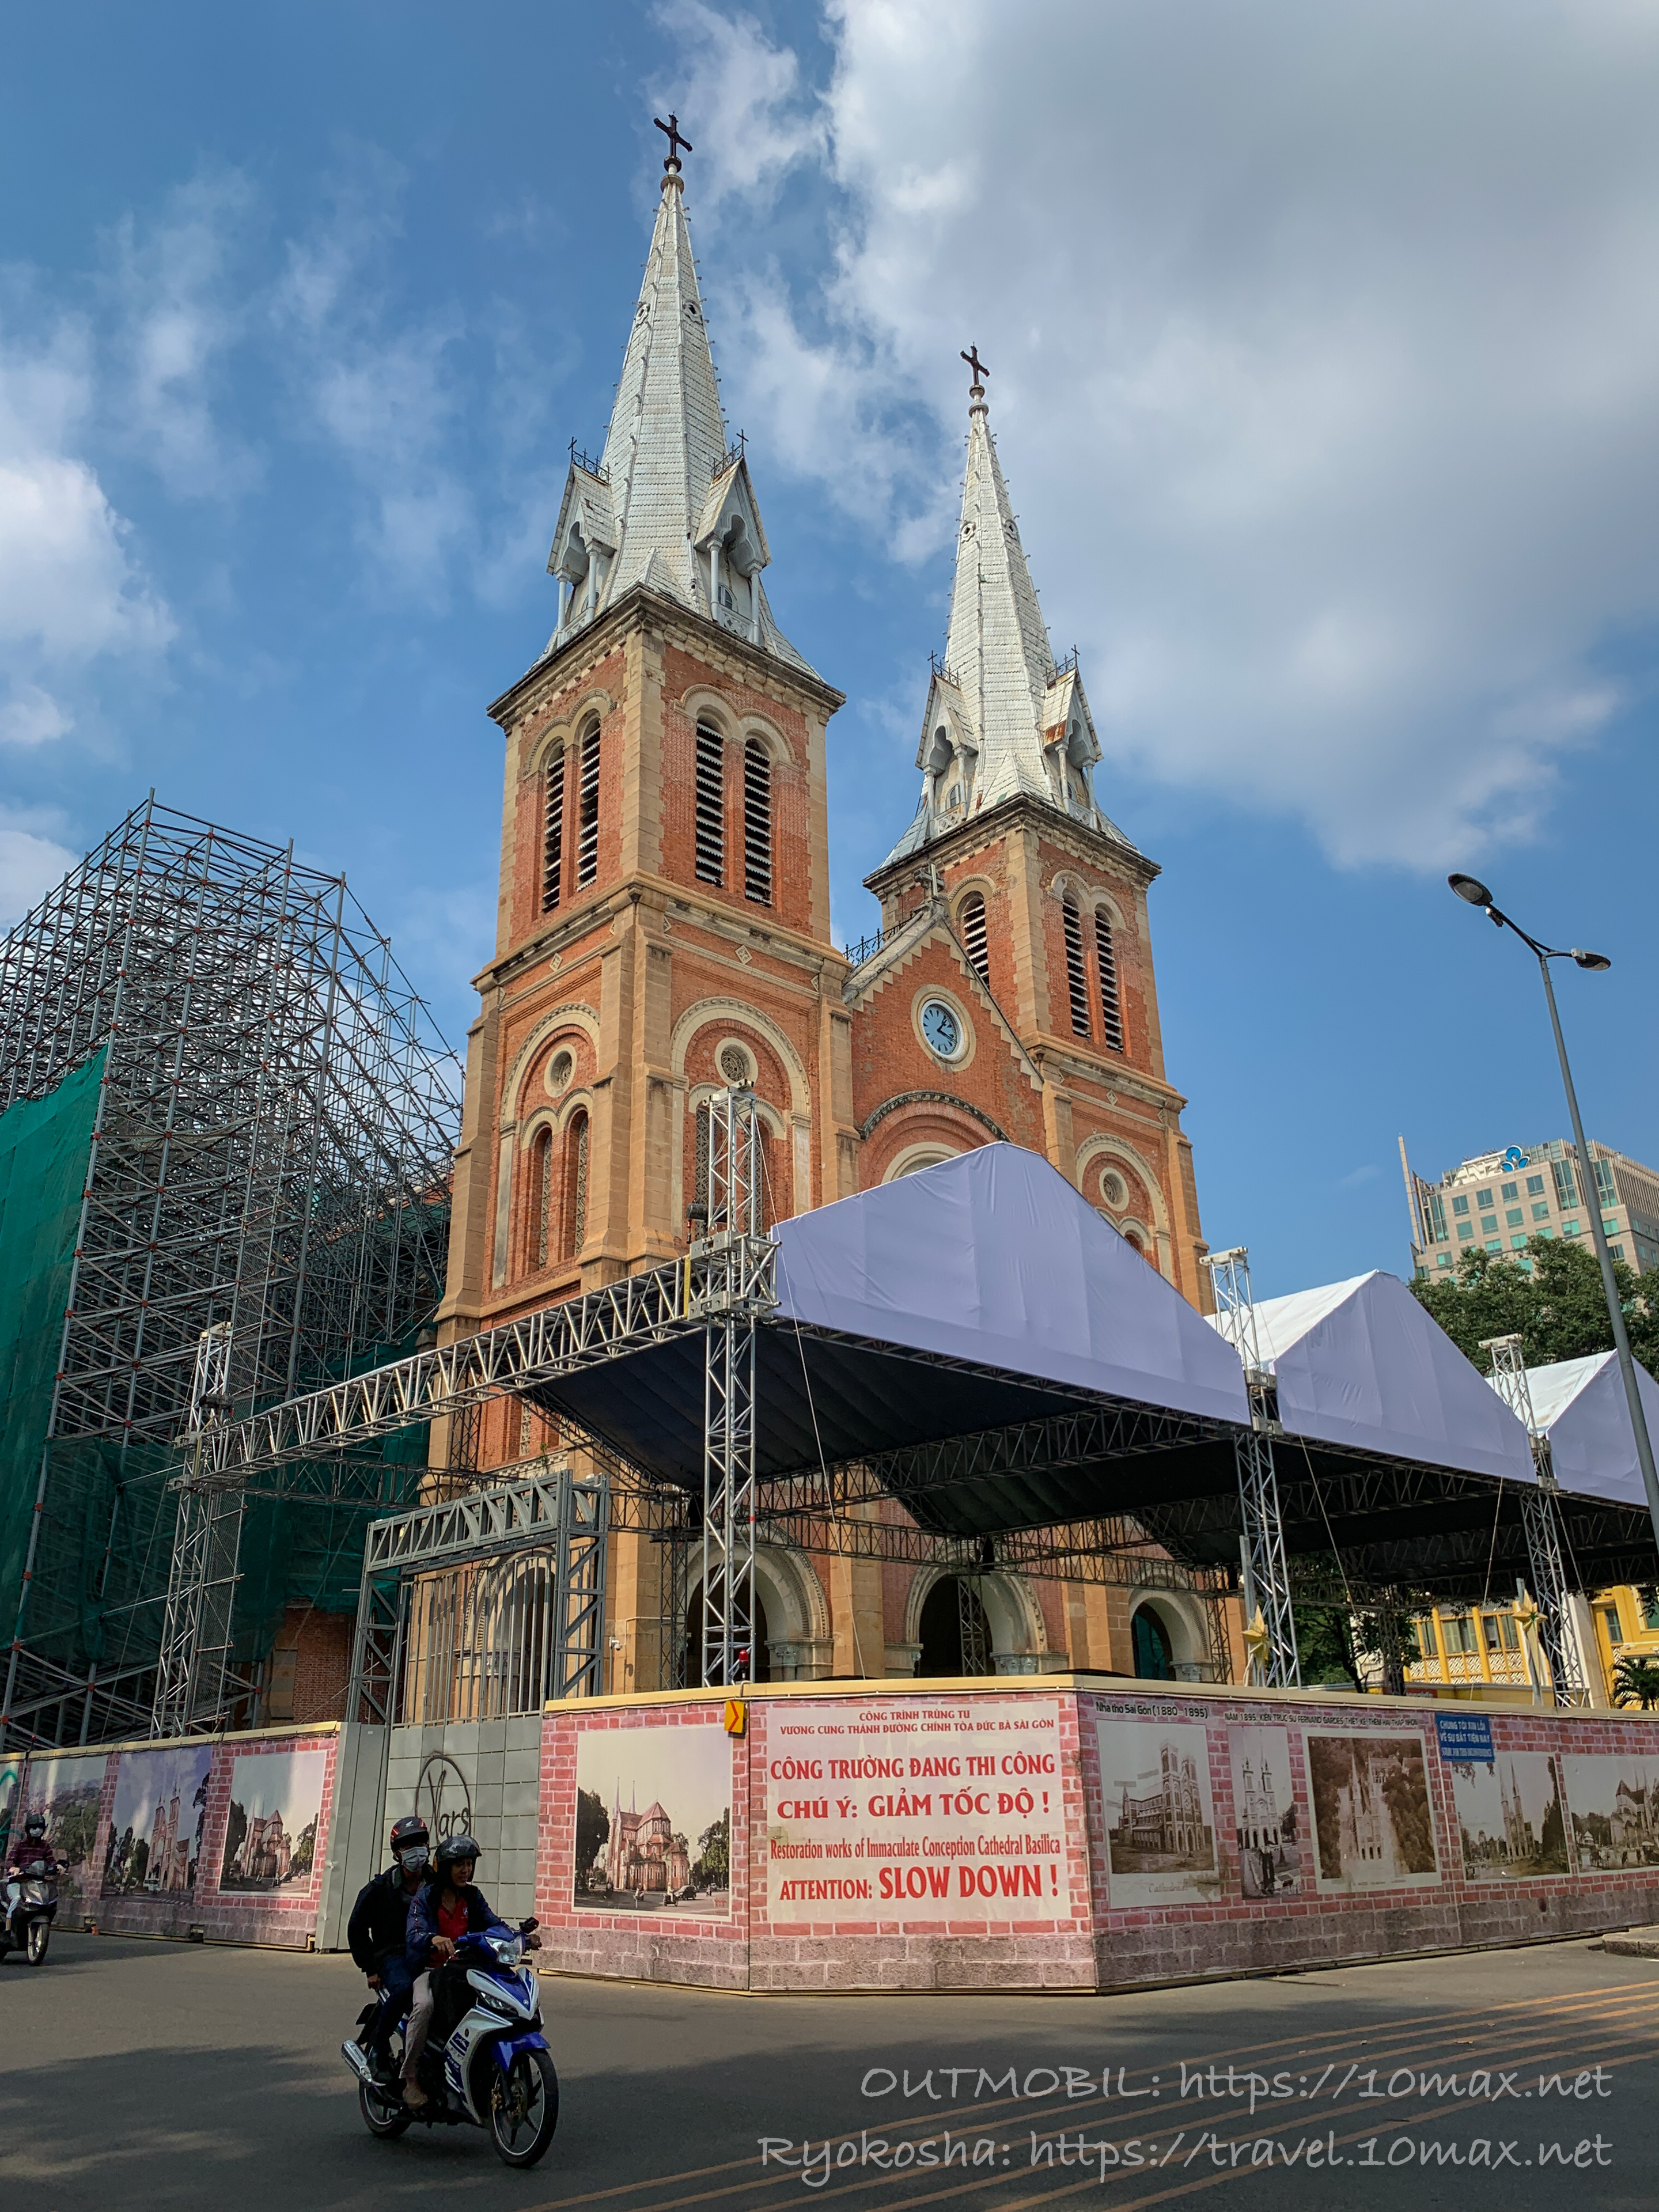 サイゴン大教会, 修復工事, いつ完了, 復元